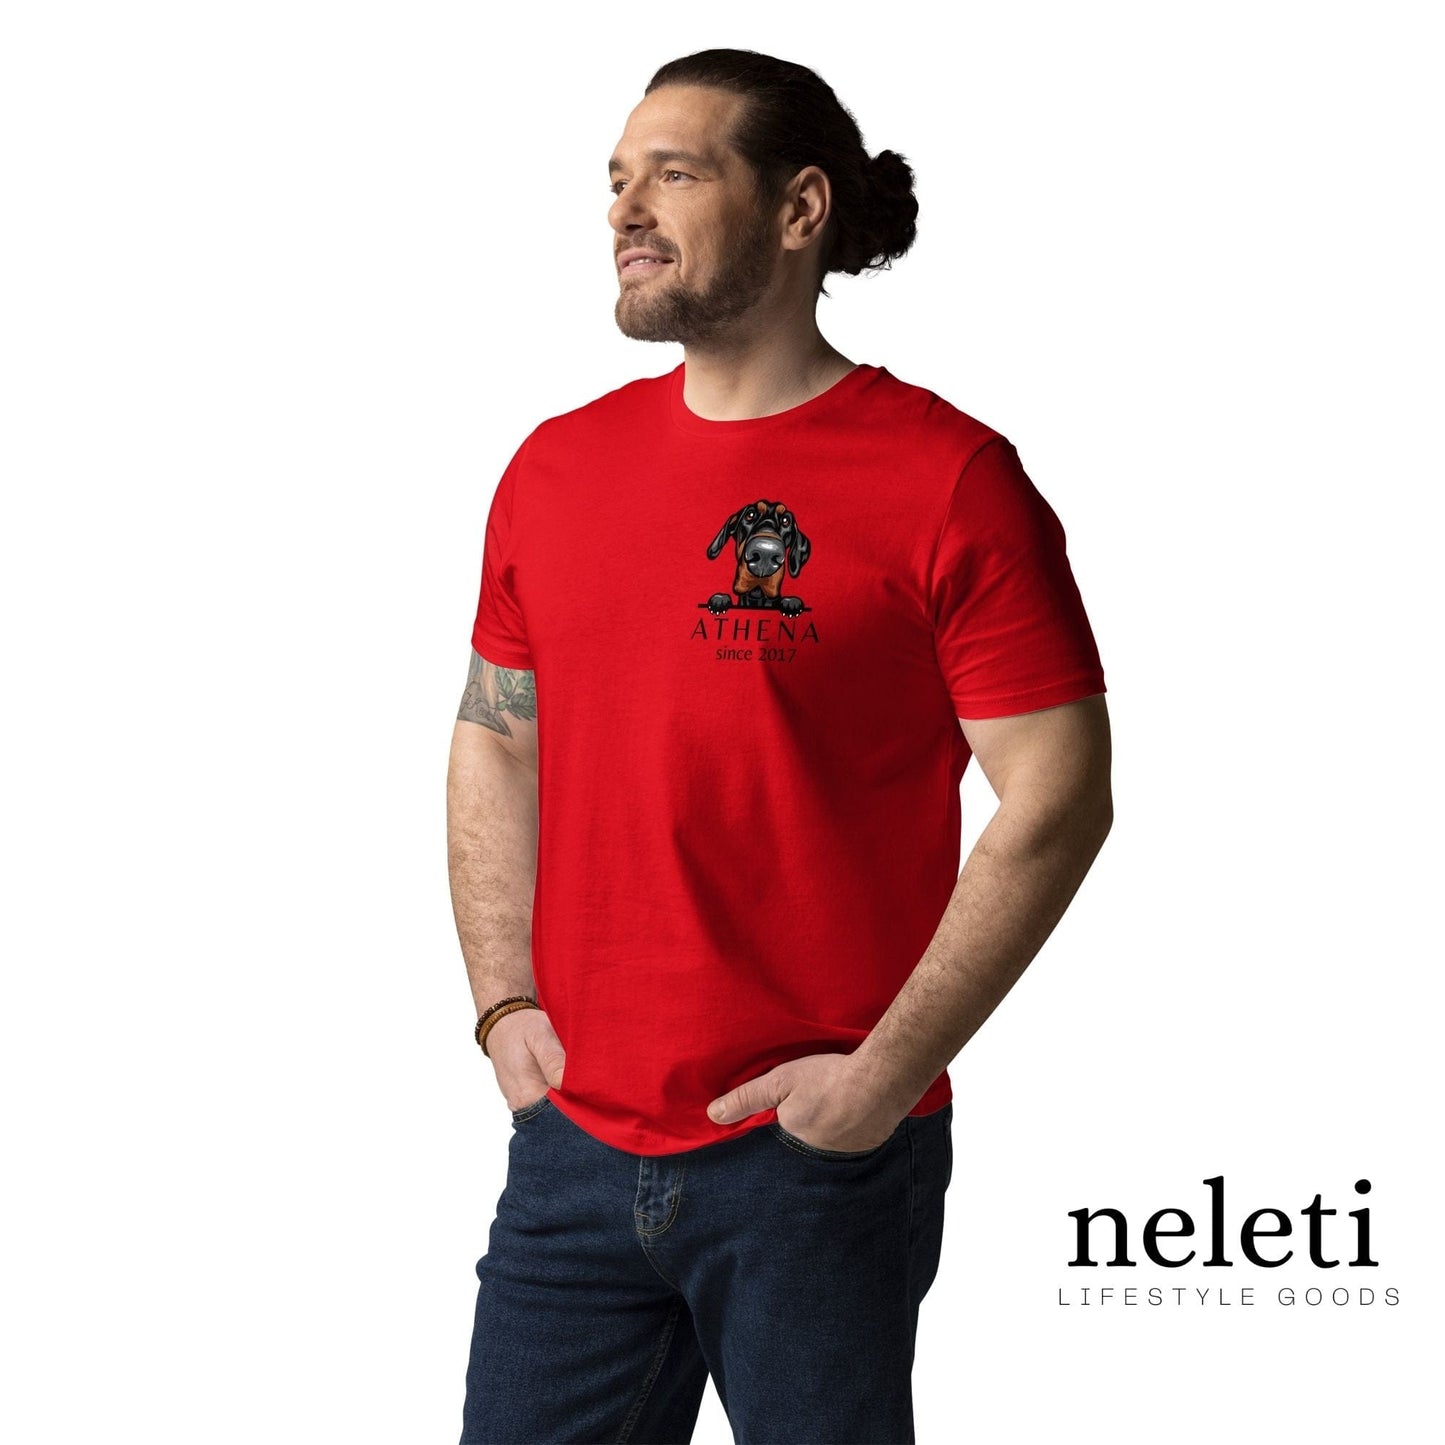 neleti.com-custom-red-shirt-for-dog-dad